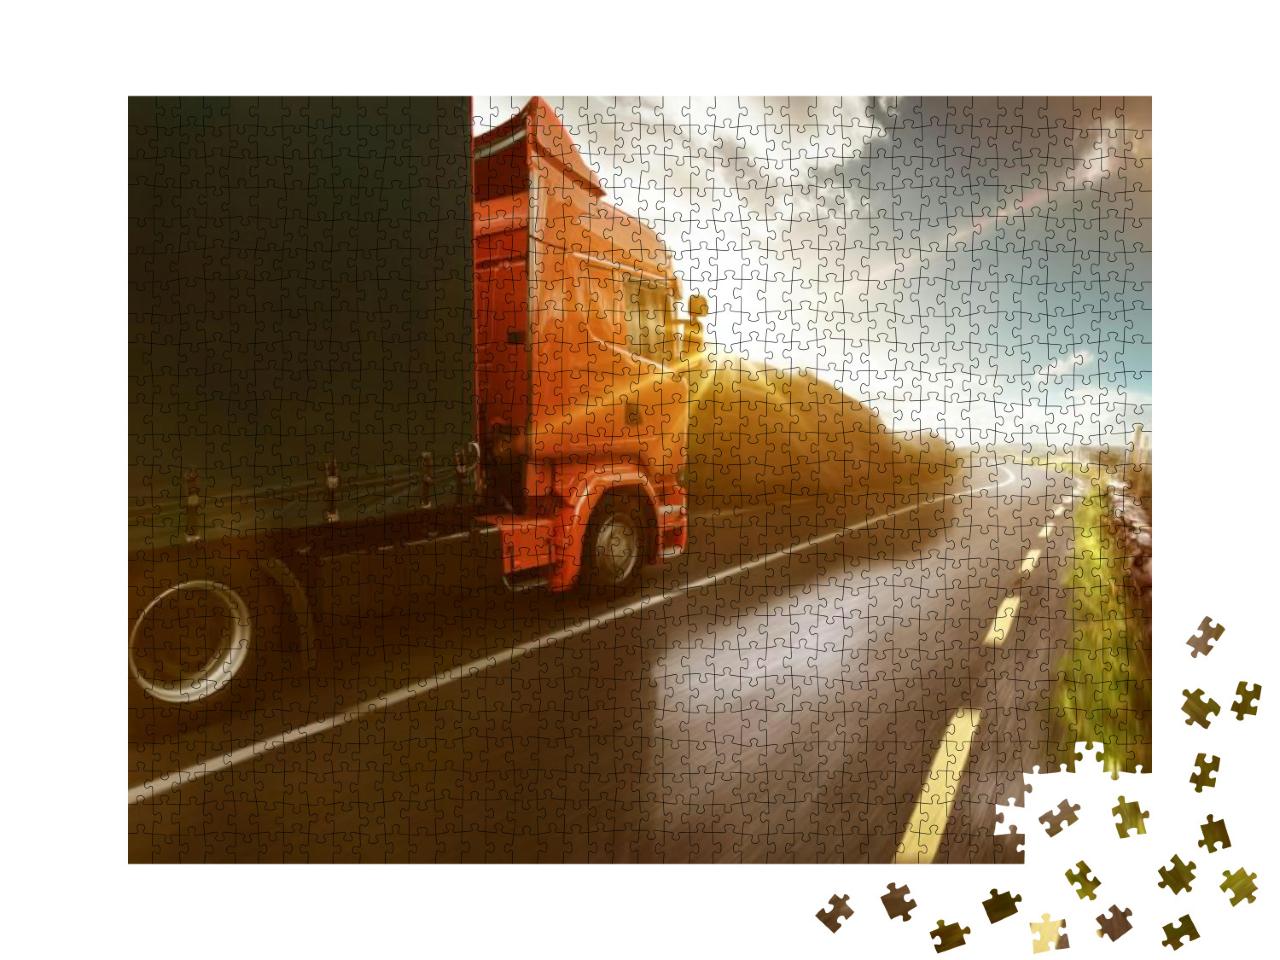 Puzzle 1000 Teile „LKW auf einer Straße rollt durch eine sonnige Landschaft“